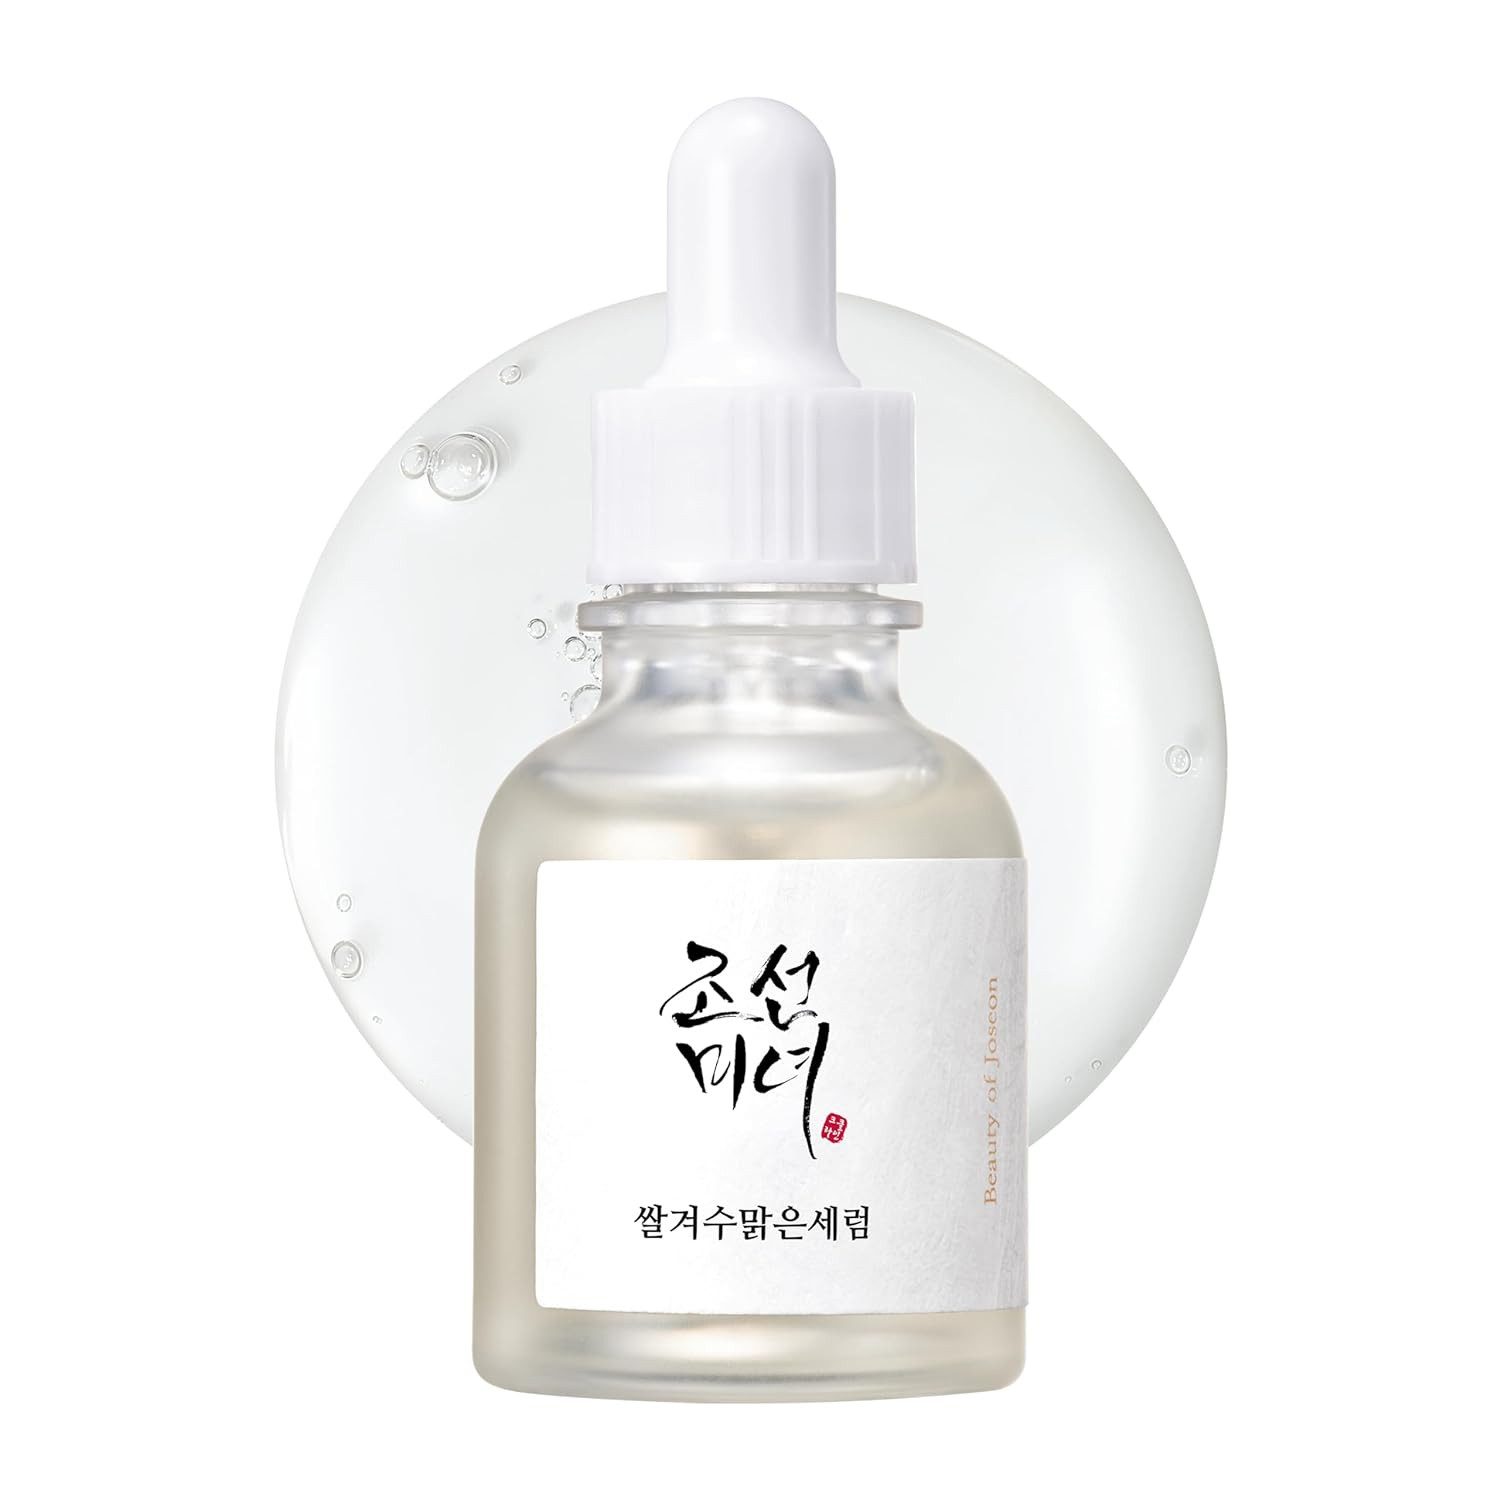 Beauty of Joseon Gesichtsserum Glow Deep Serum Rice + Alpha Arbutin Enthält essentielle Pflegeprodukte, ideal für die tägliche Hautpflege, 1-tlg., Hautaufhellend, antioxidativ, feuchtigkeitsspendend